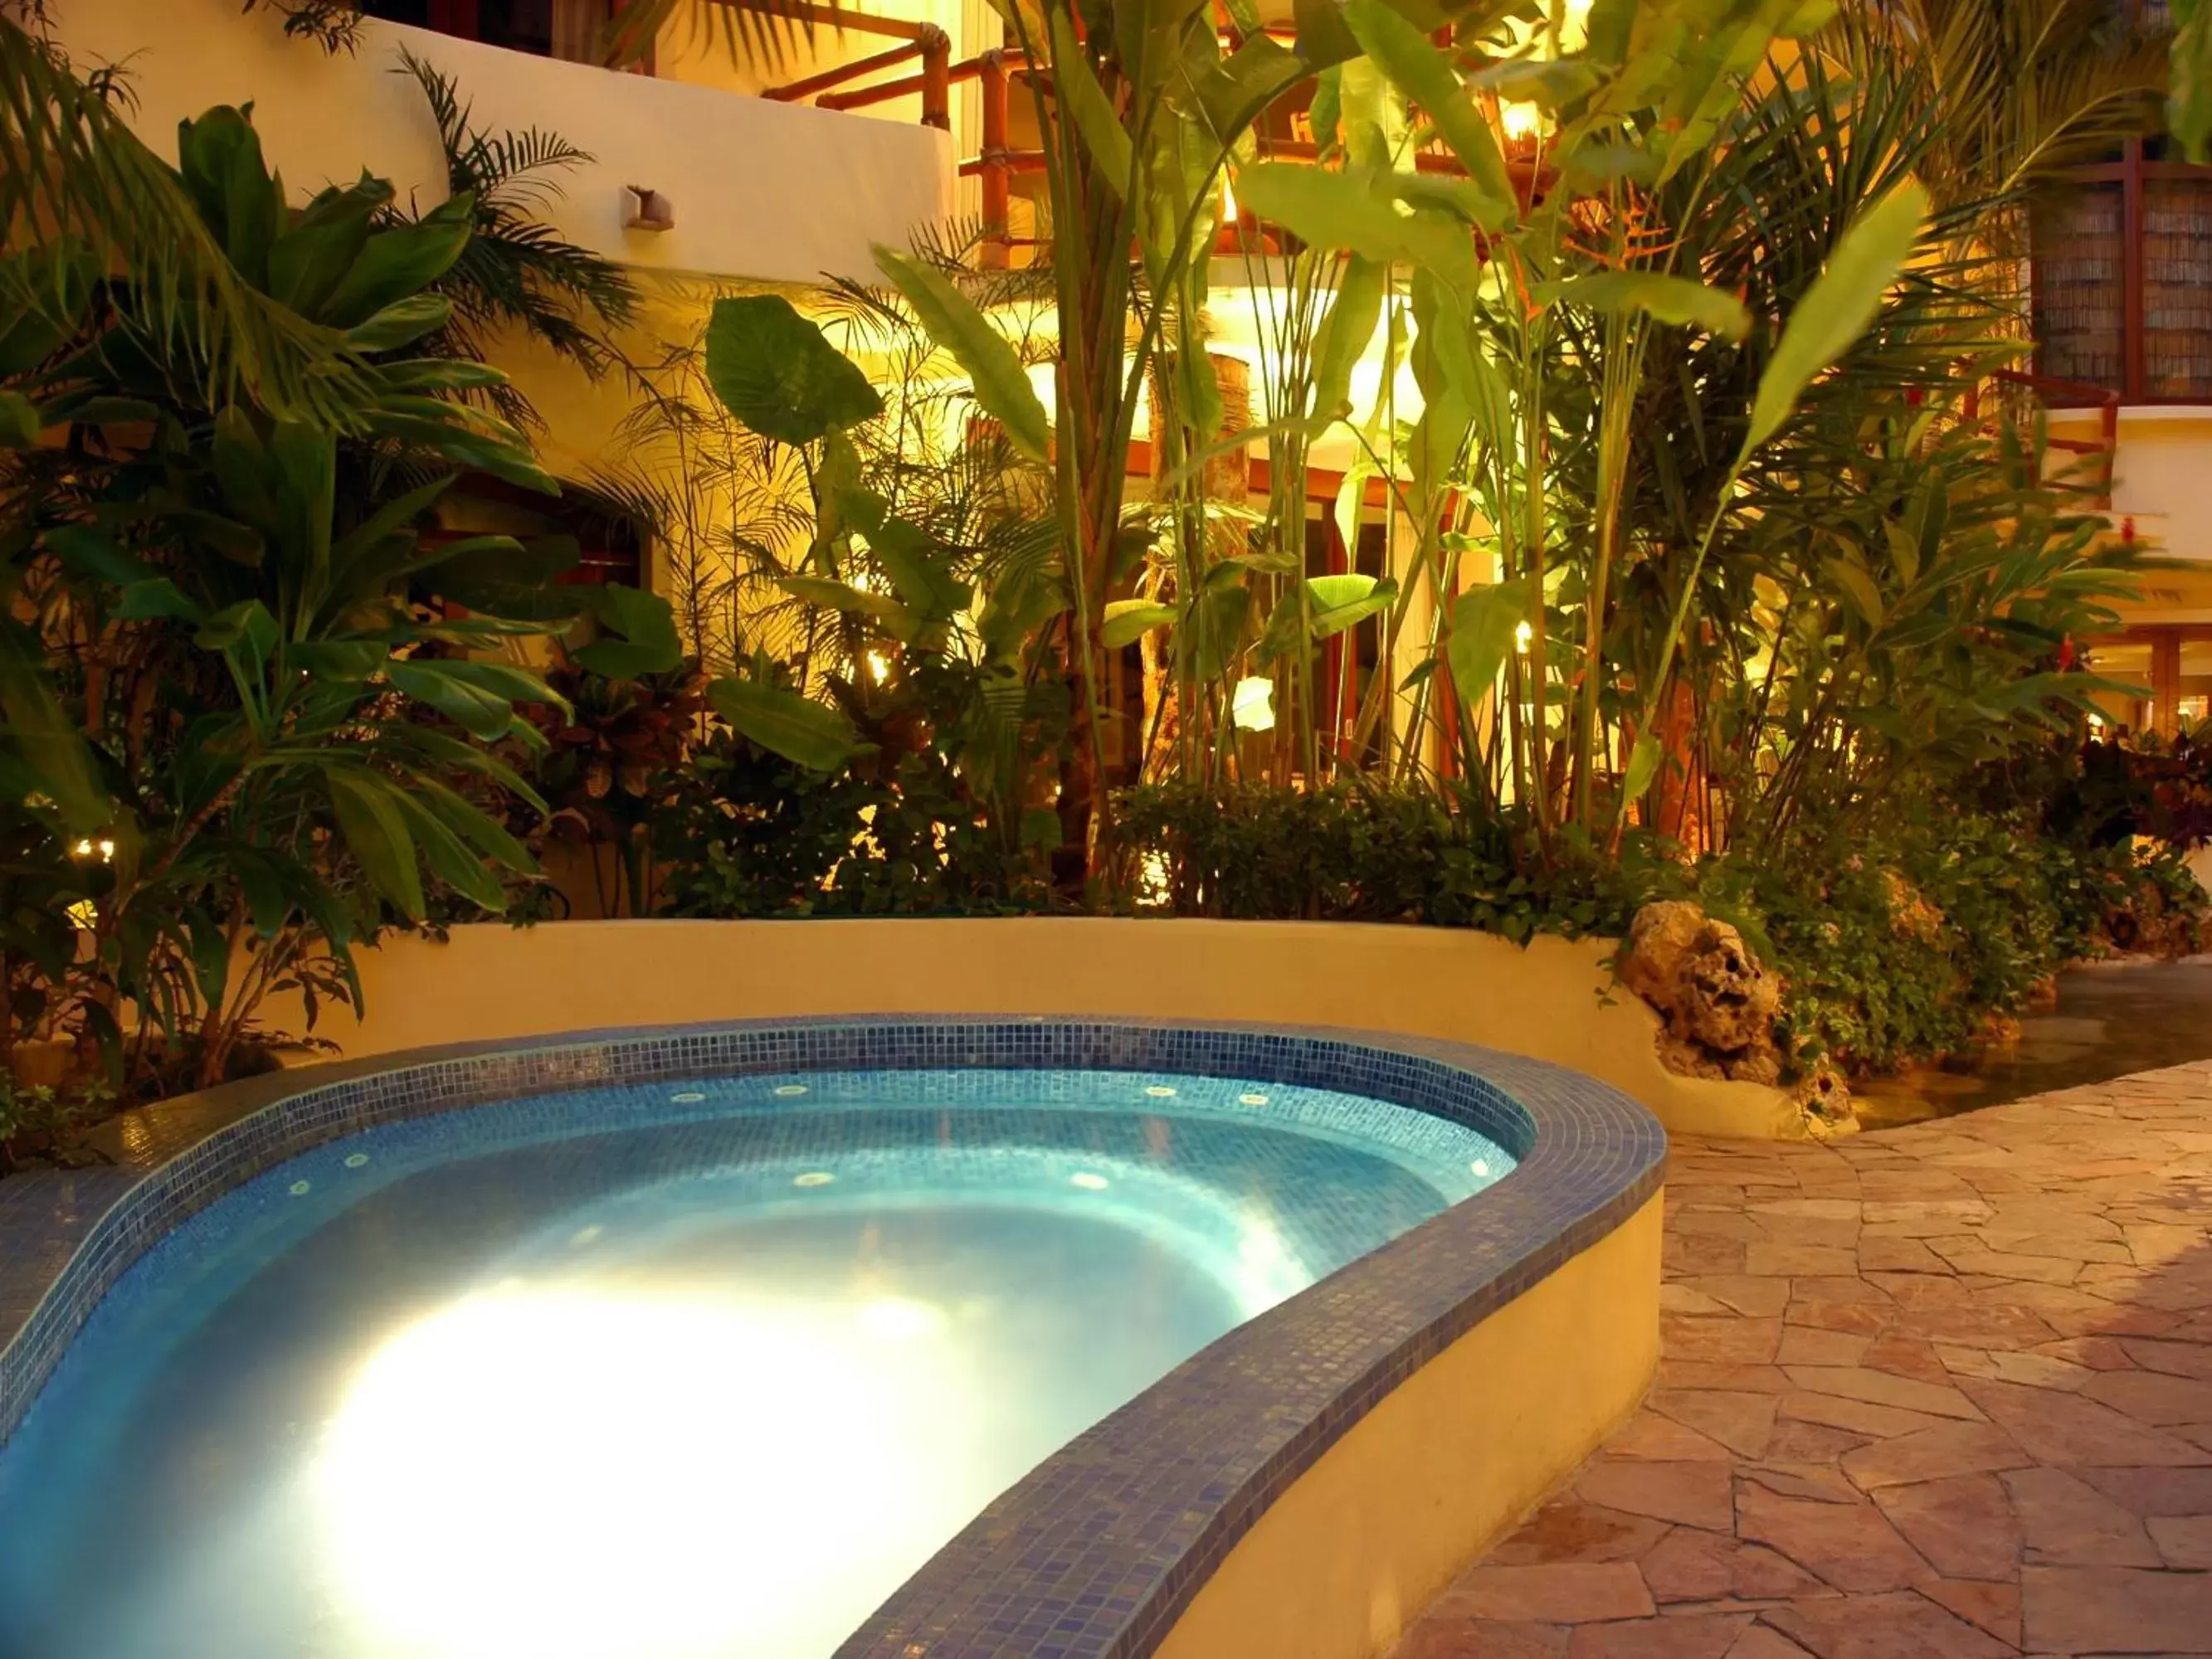 Swimming Pool in Villas Sacbe Condo Hotel and Beach Club